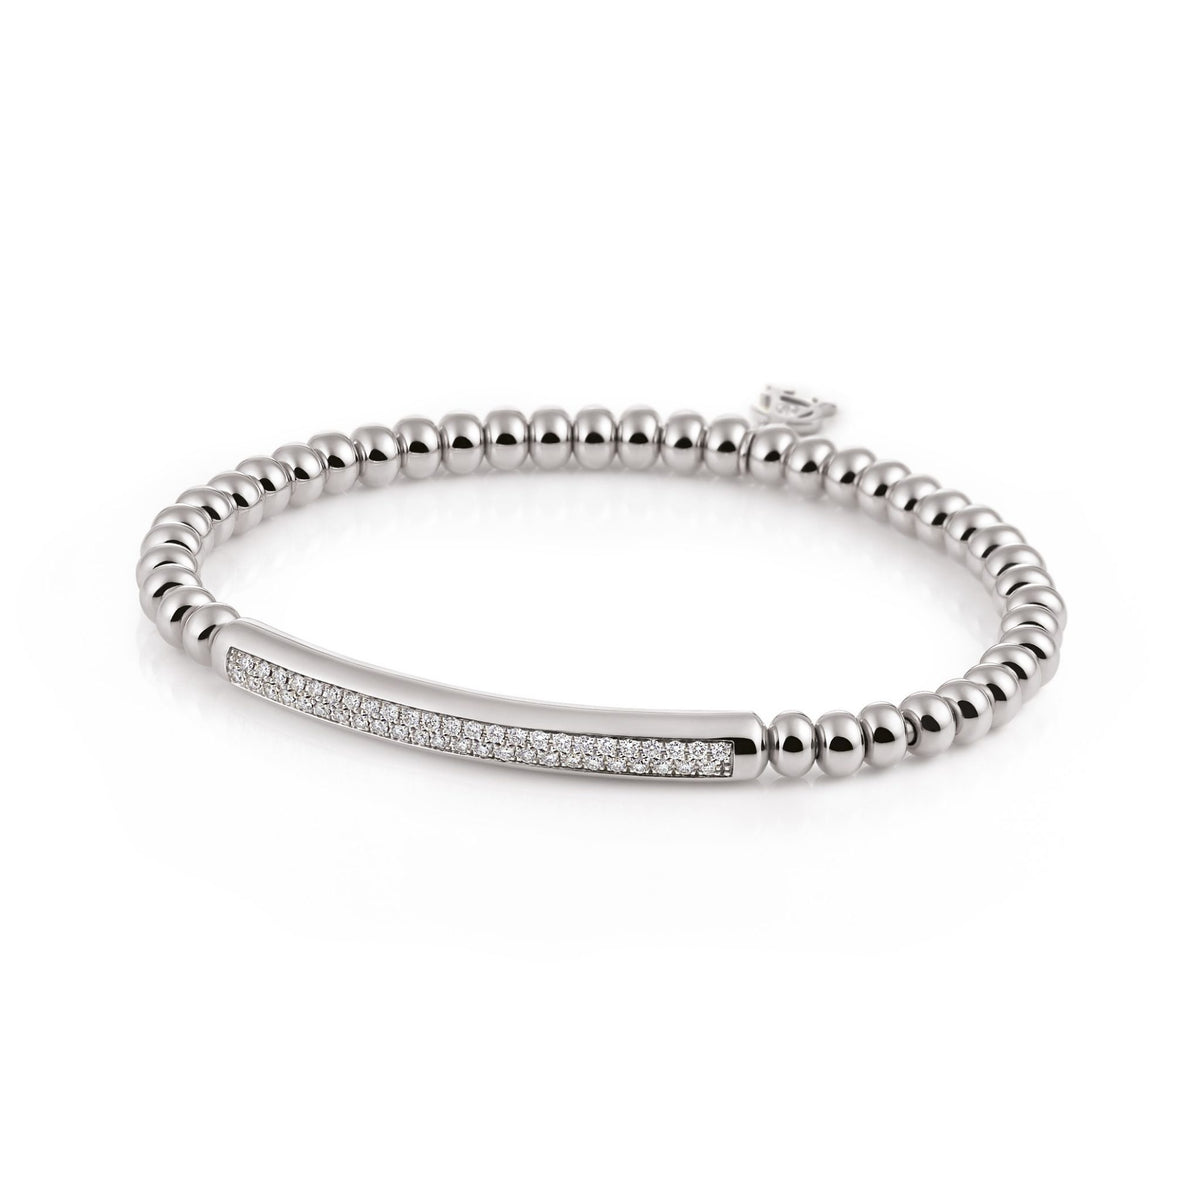 Al Coro Stretchy Bracelet in 18k White Gold with 48 Diamonds - Orsini Jewellers